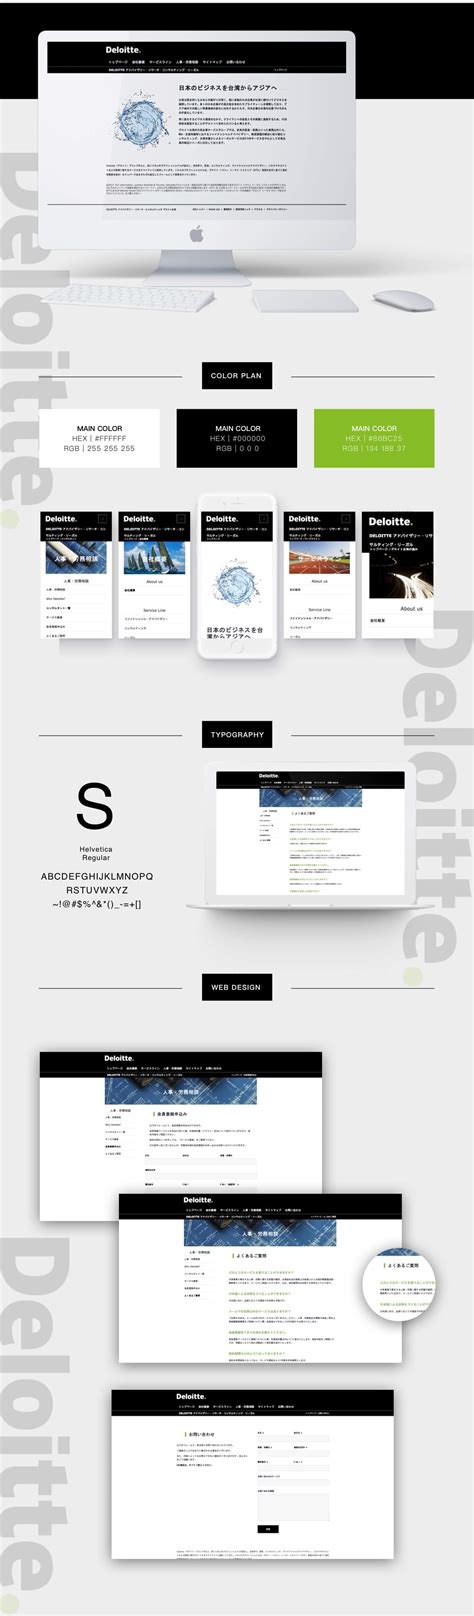 DELOITTE - 網站設計範例 - 多國語言網站 - 公司官網製作案例｜鵠崙設計